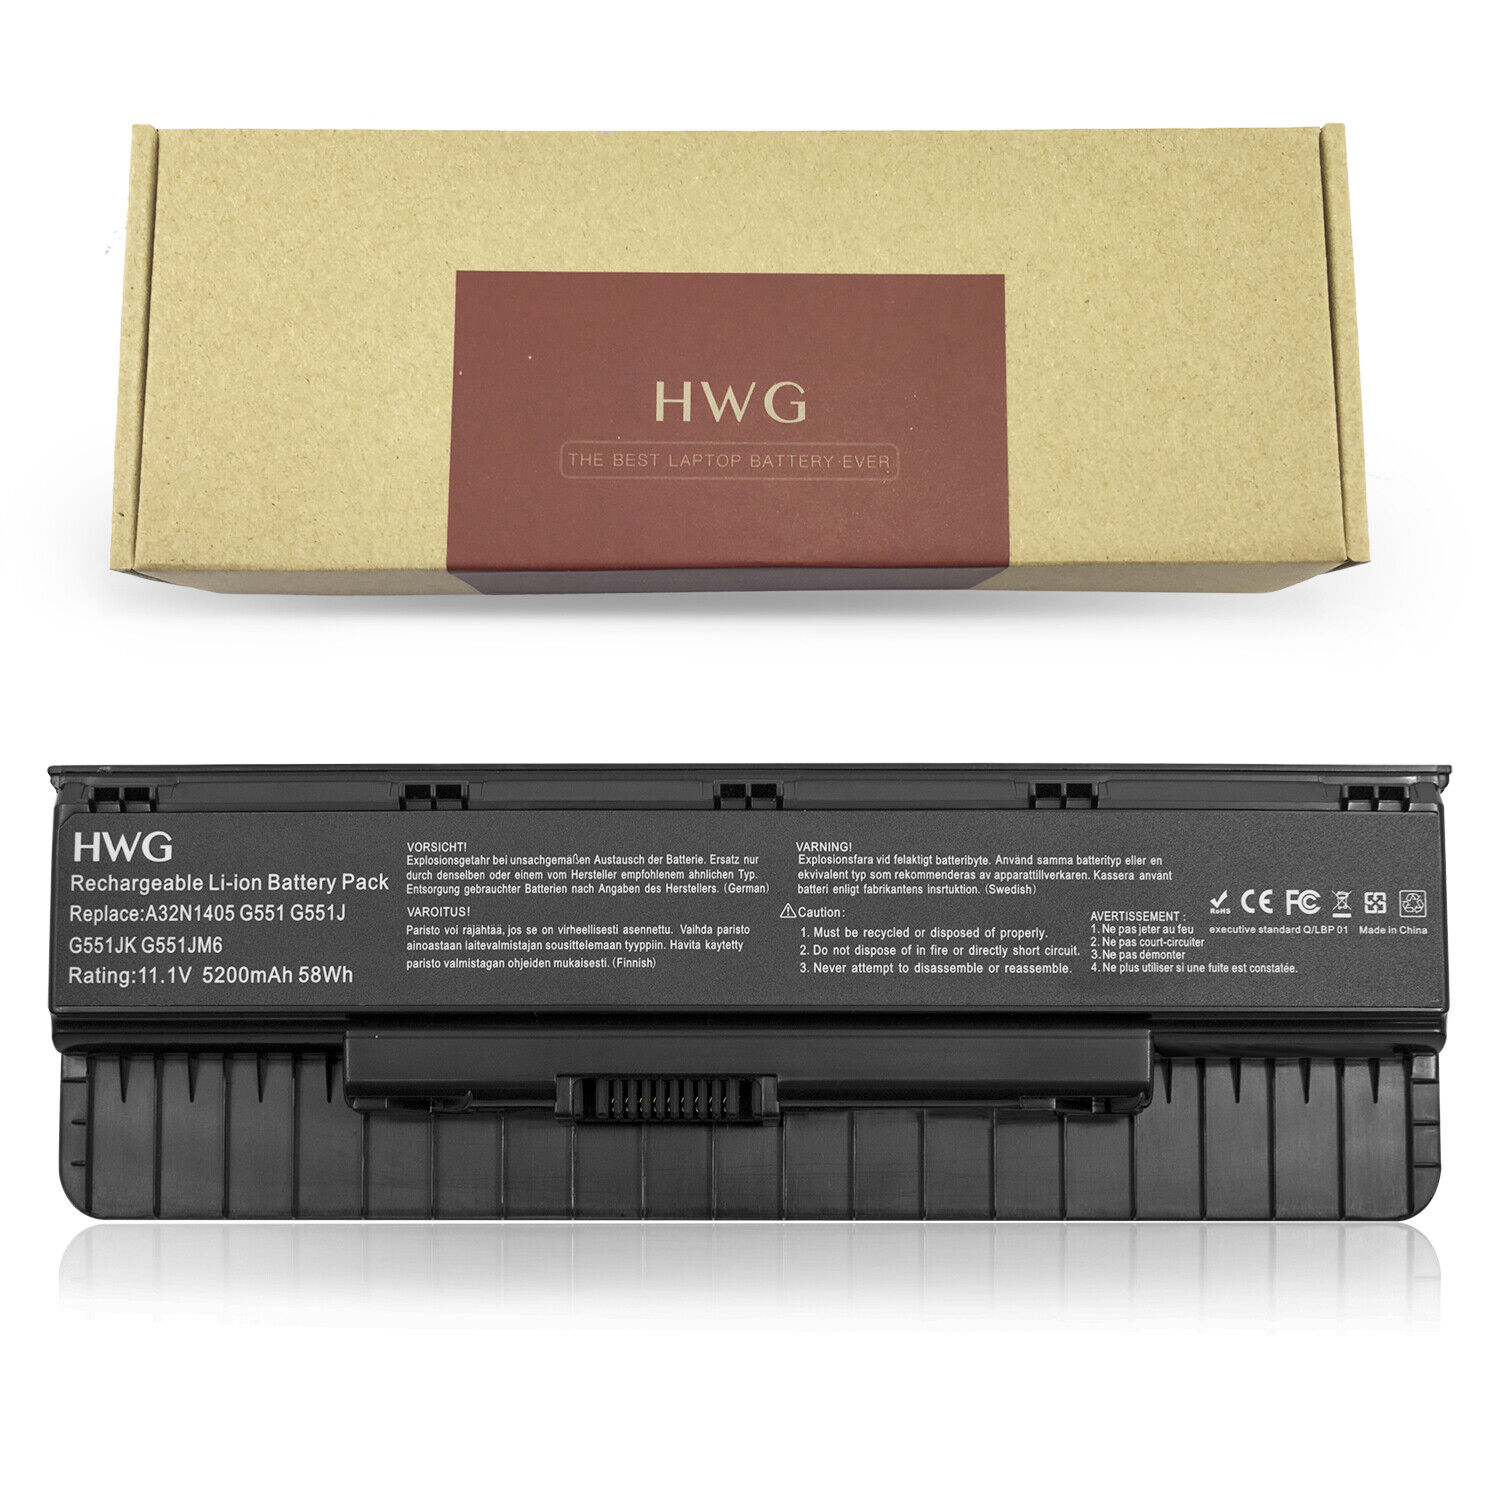 HWG 48Wh Laptop Battery For Asus GL771JM GL771JW A32N1405 G771JM-T7080H G551